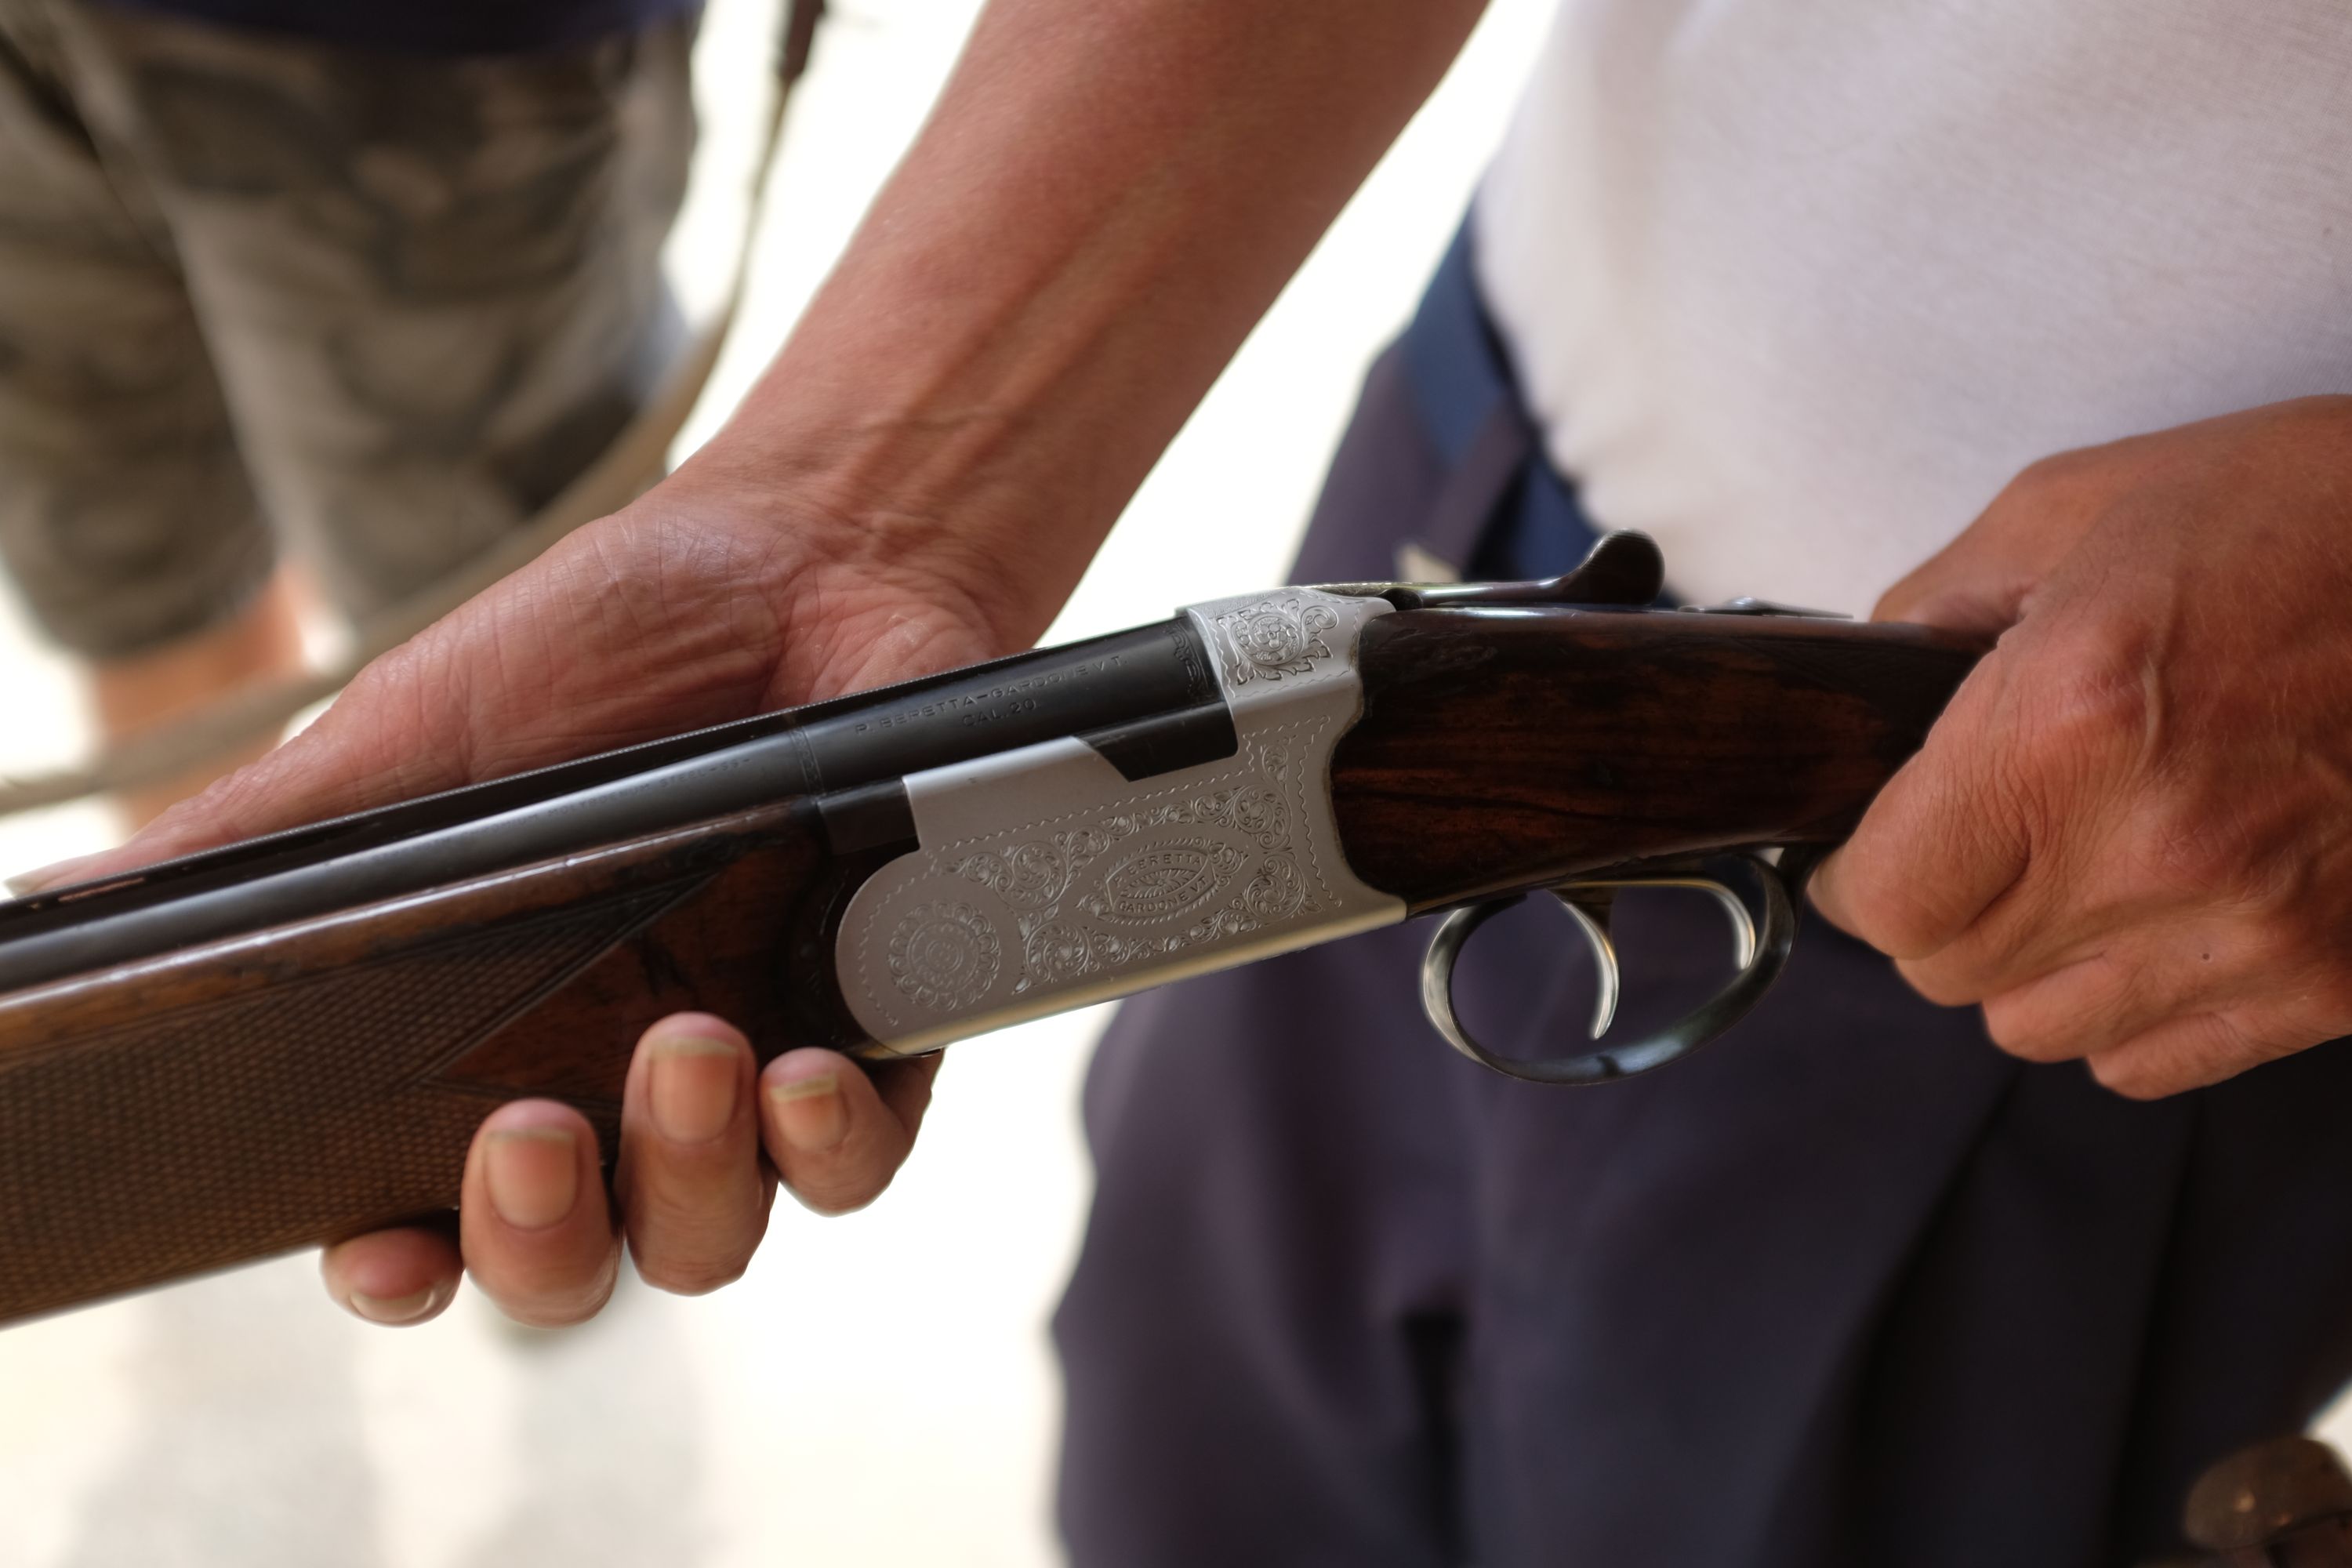 Closeup of a man’s hands holding a Beretta shotgun.